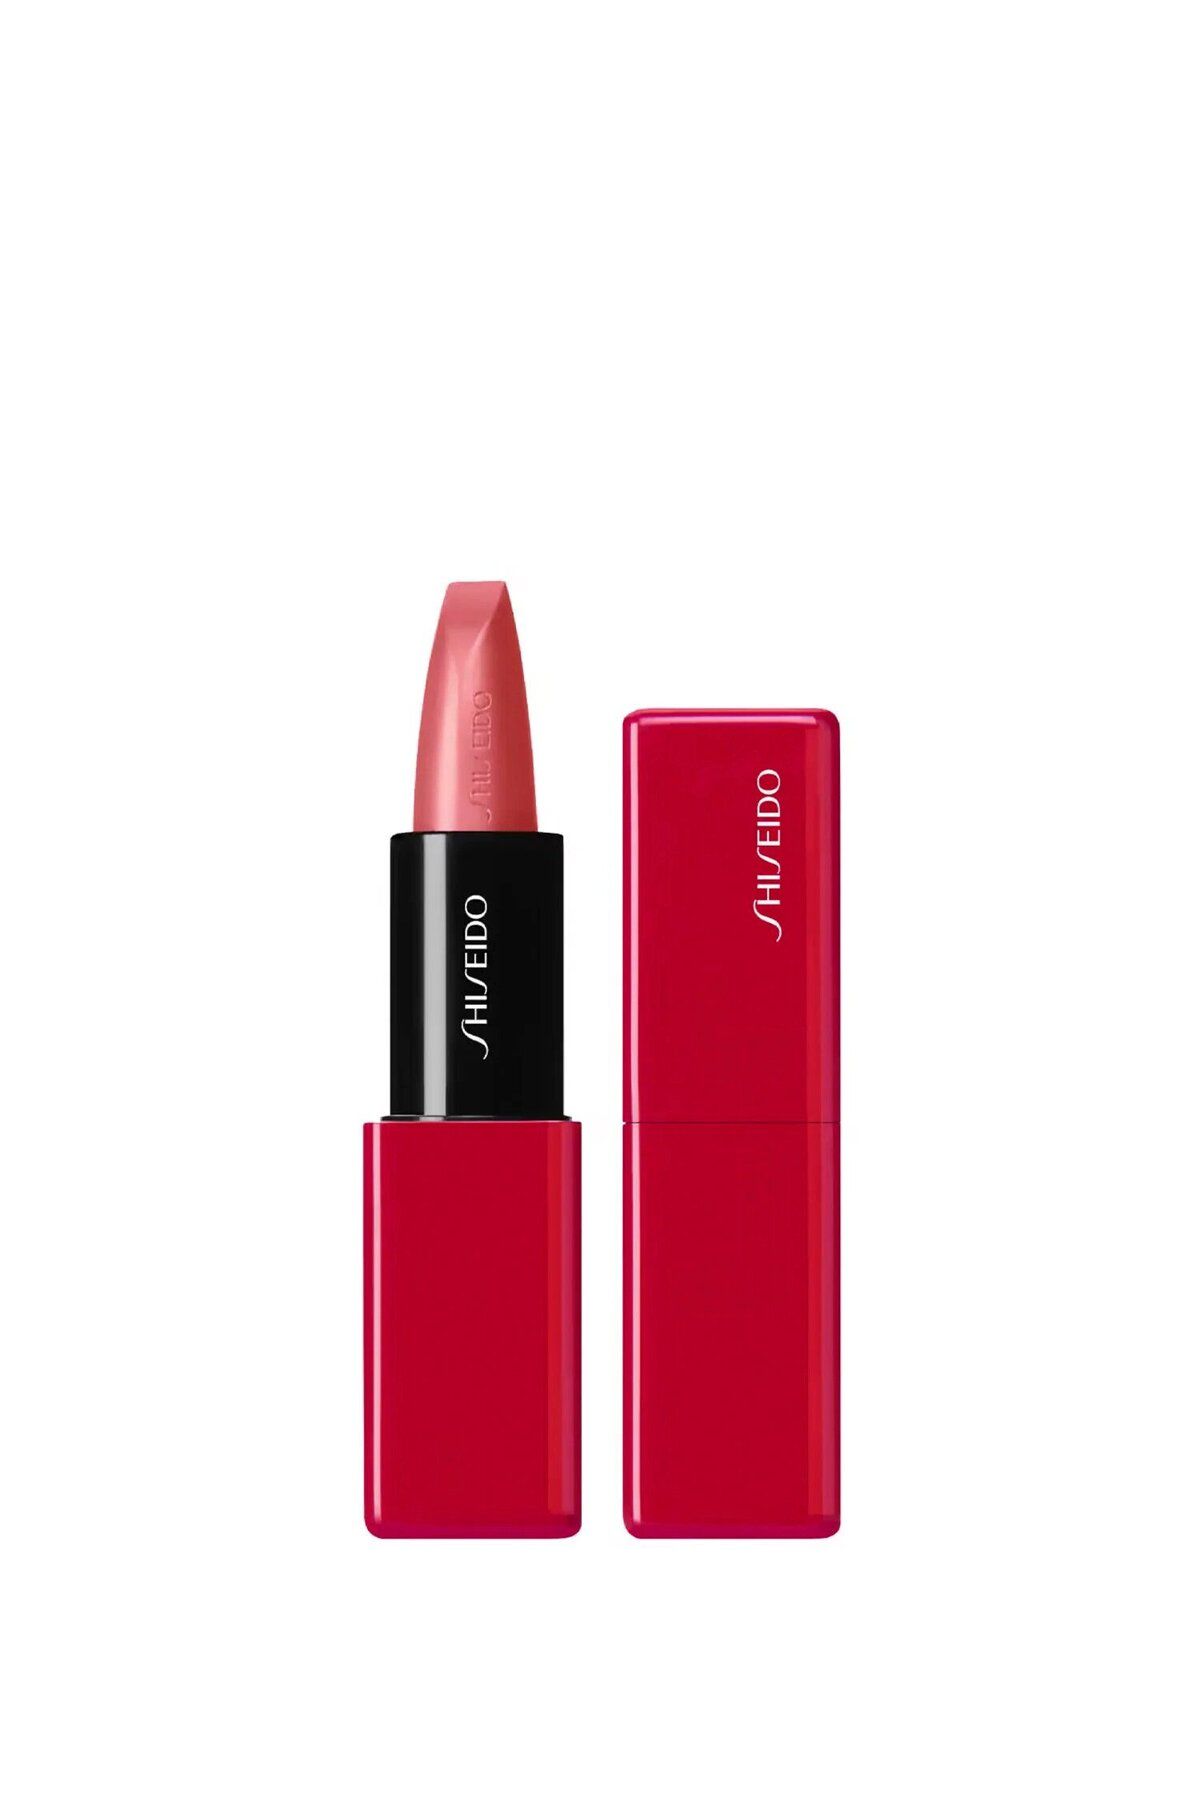 Shiseido Technosatin Gel Lipstick - 8 Saat Kalıcılık Ve 24 Saat Nemlendirme Sağlayan Saten Ruj 3,30 gr